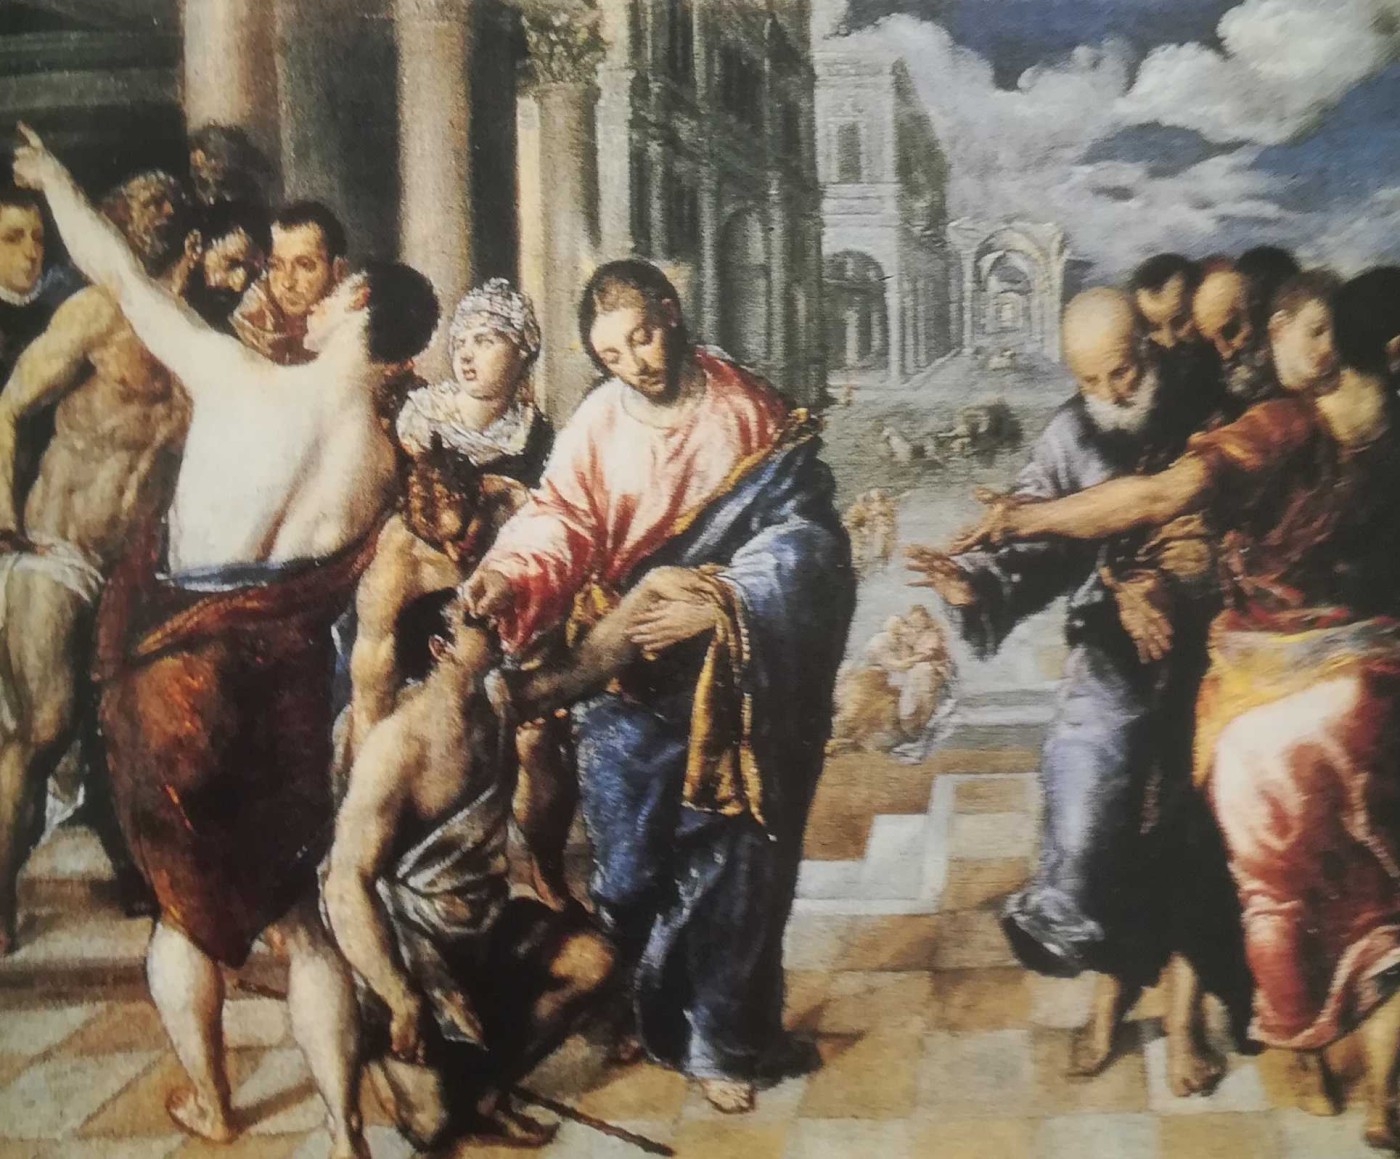 Guarigione del cieco - El Greco, Parma